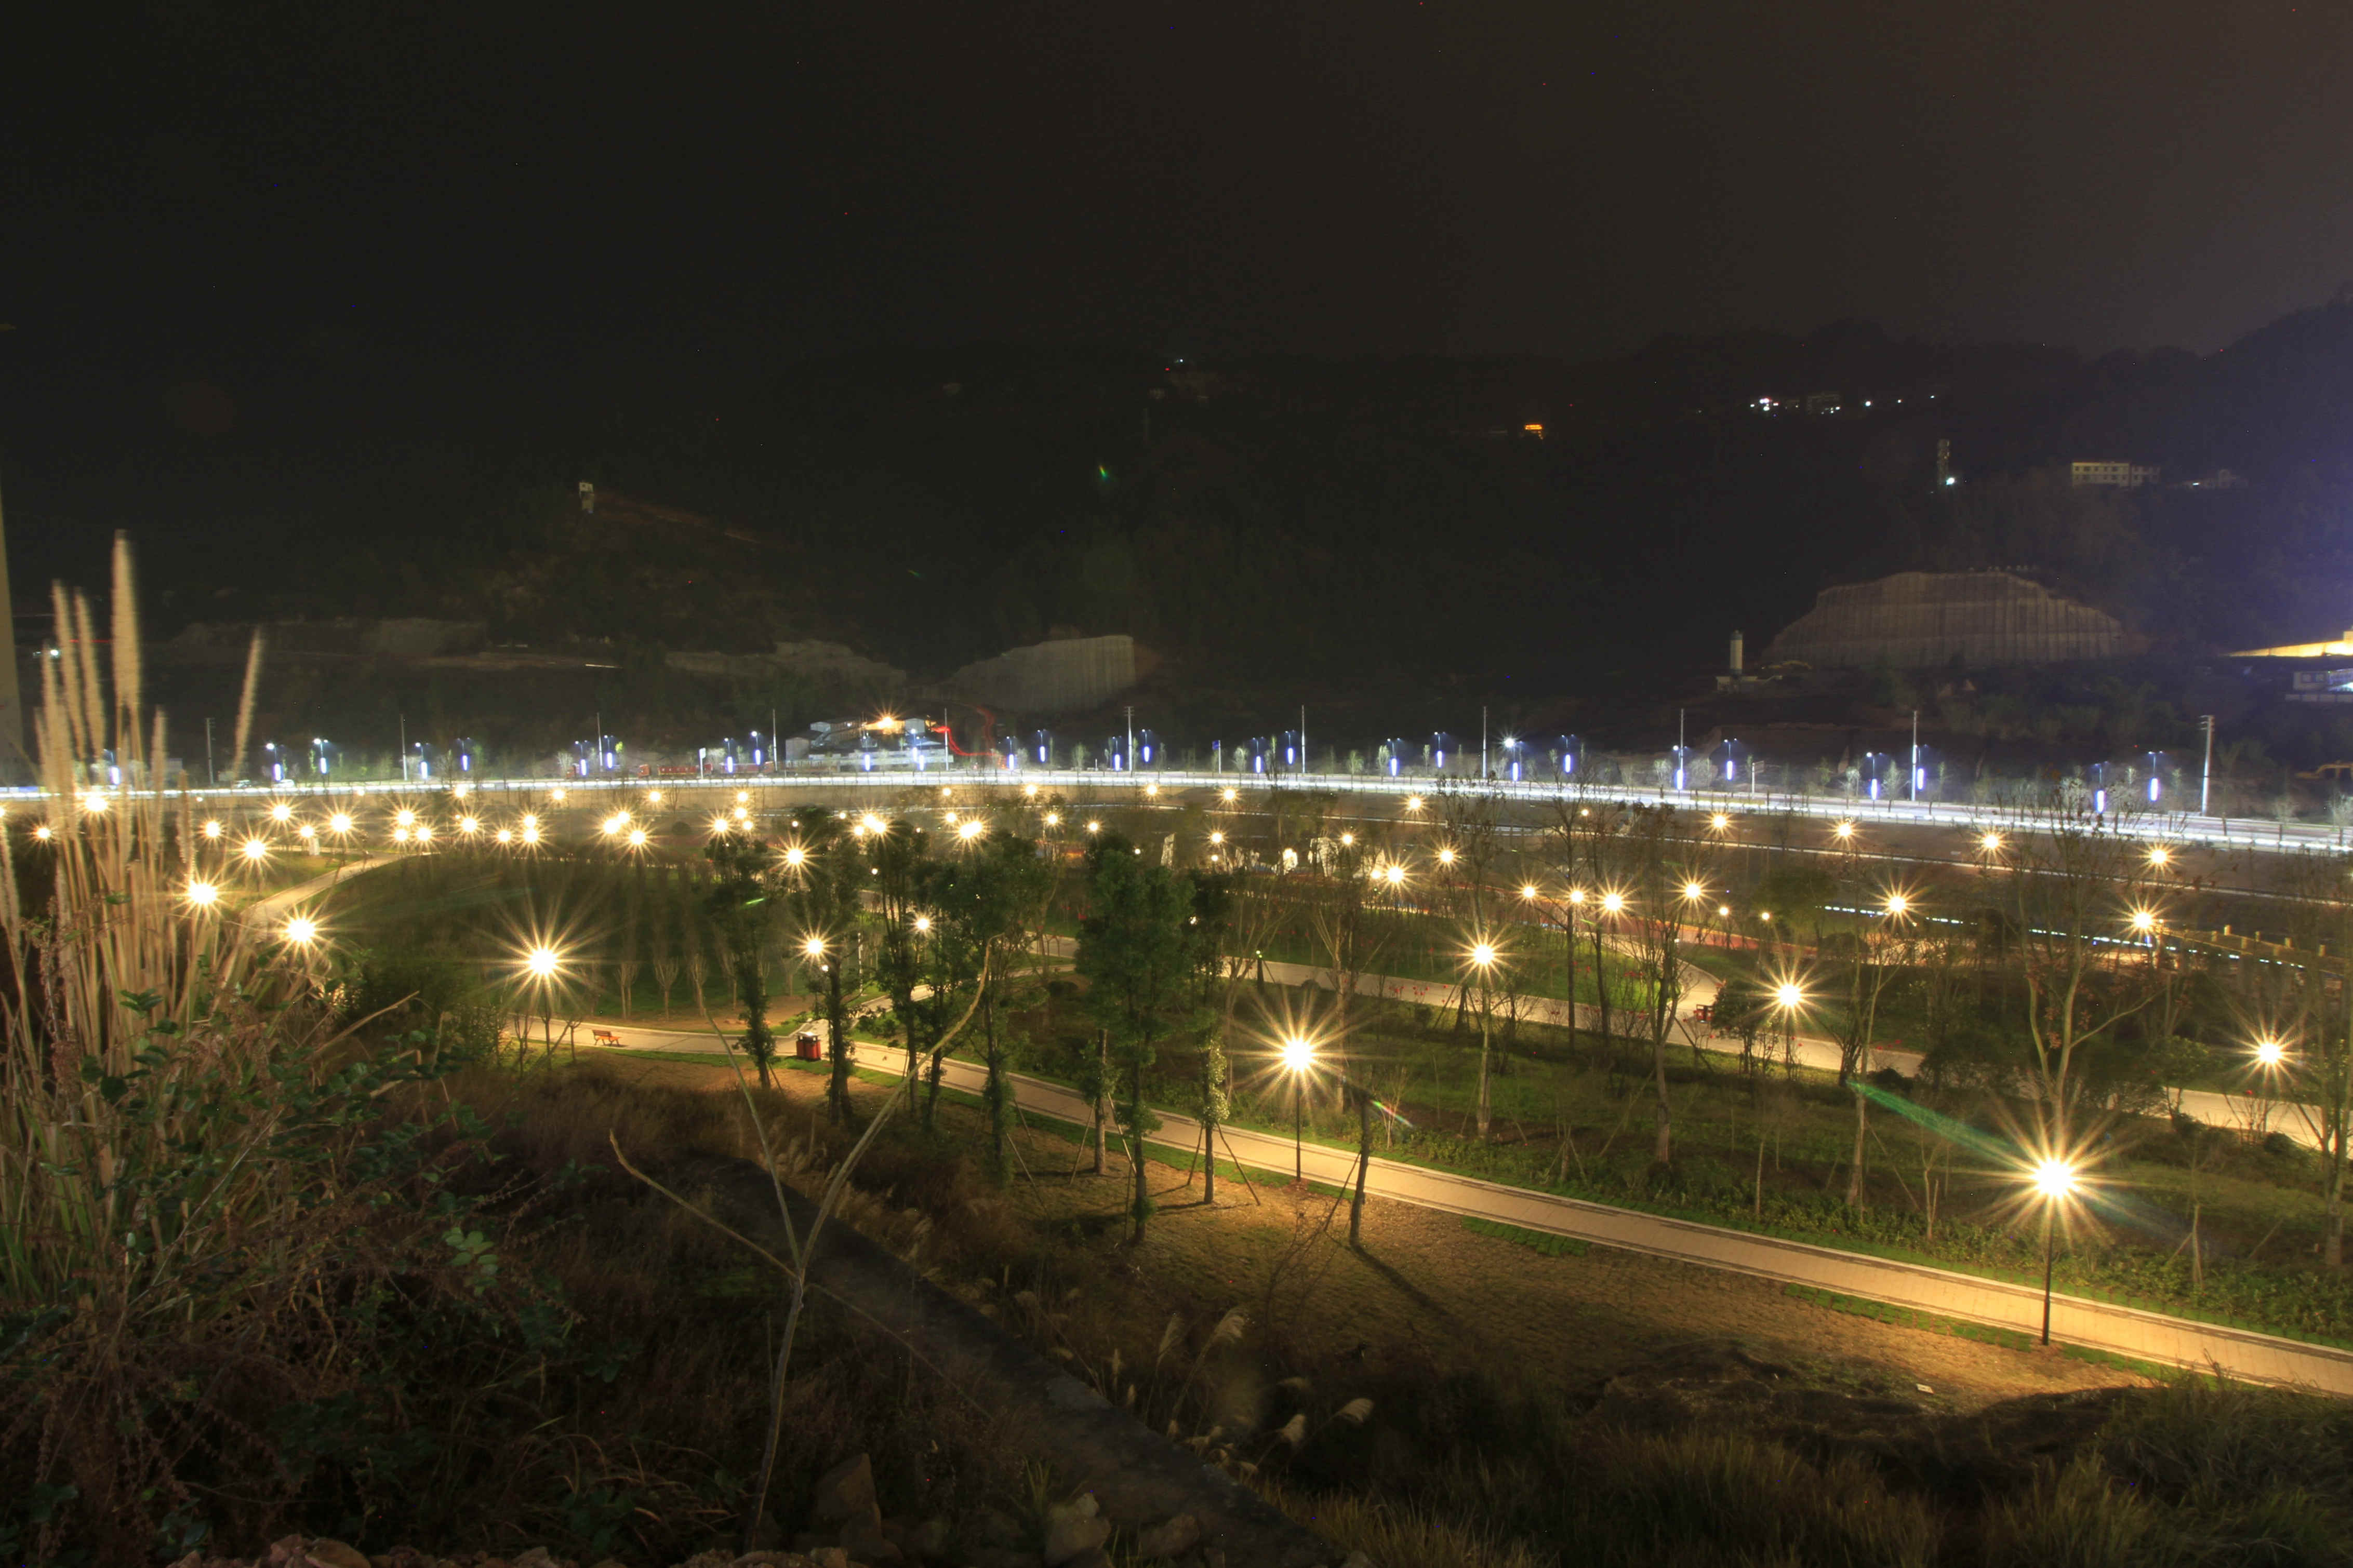 韩国平昌夜景图片